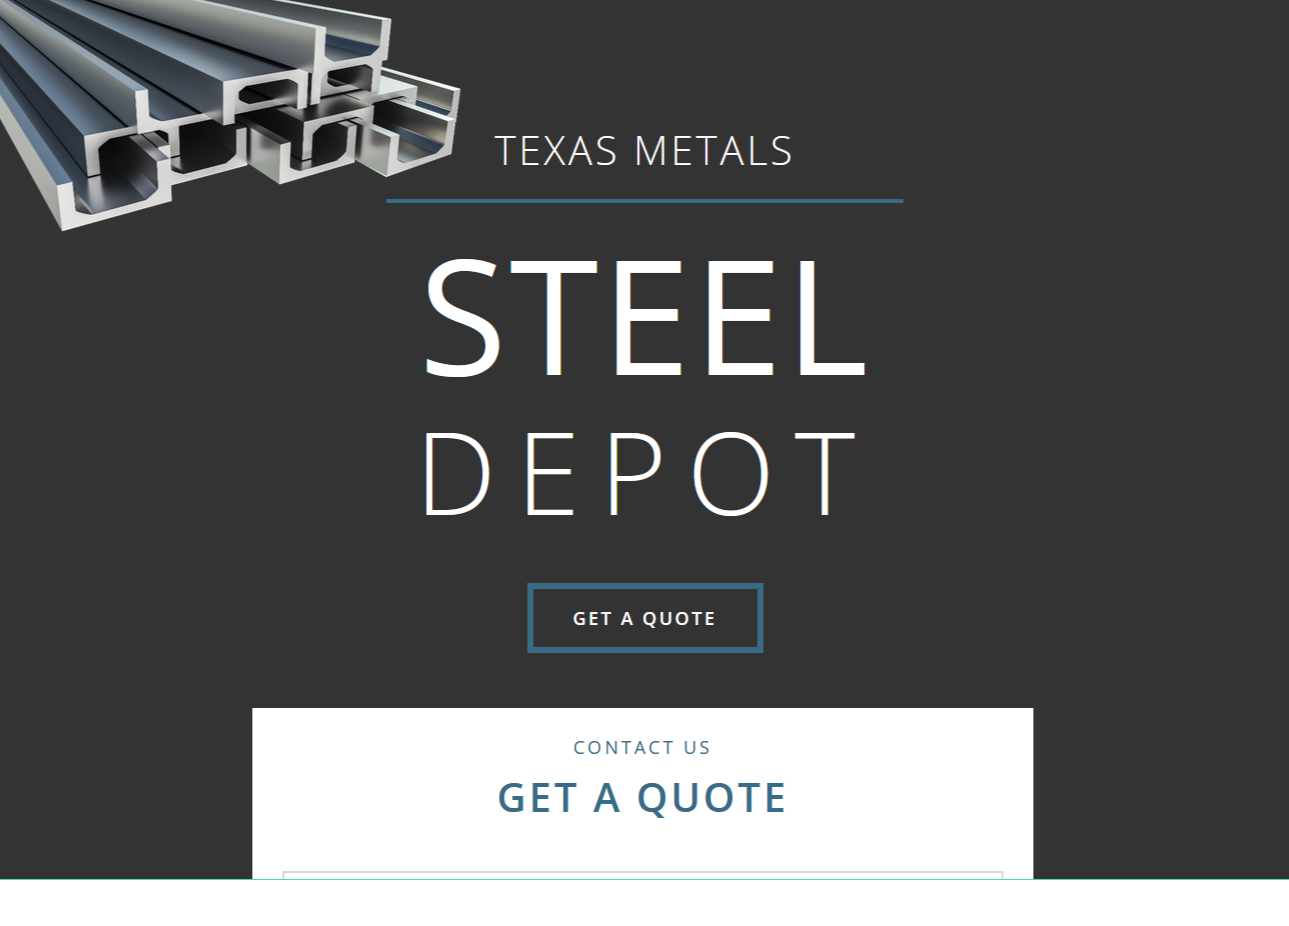 Texas Metals Steel Depot